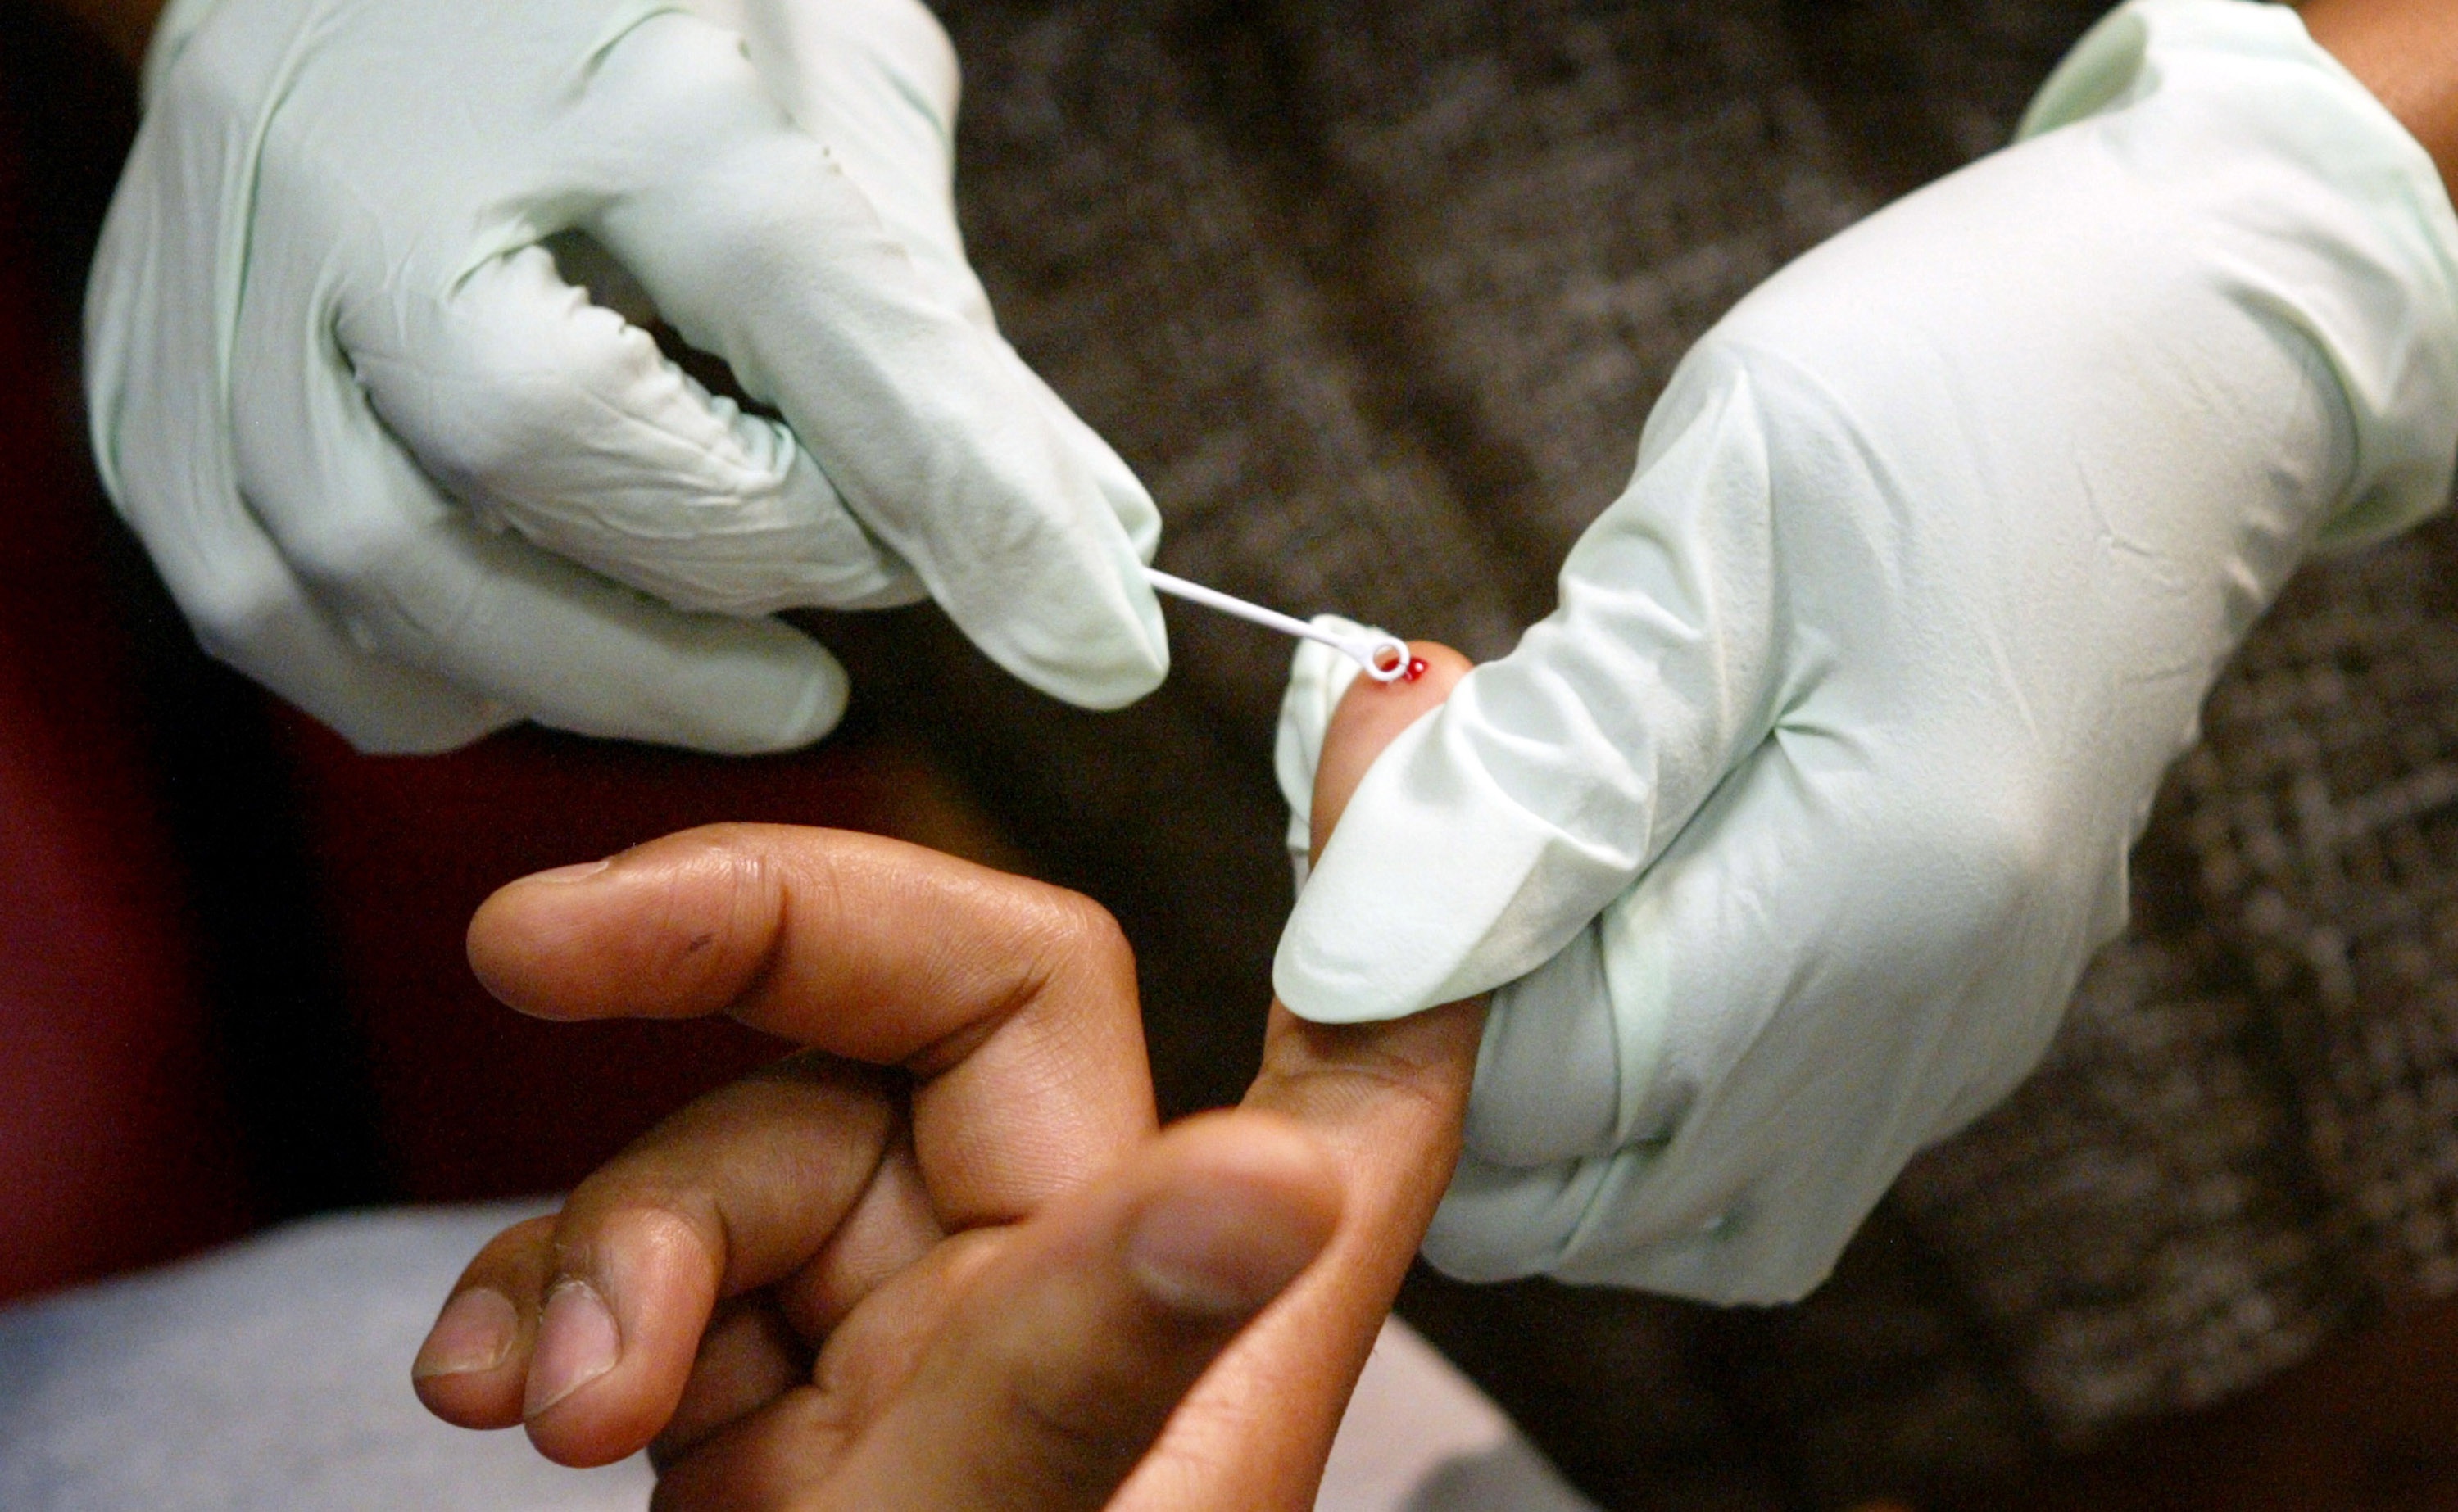 hiv-testing